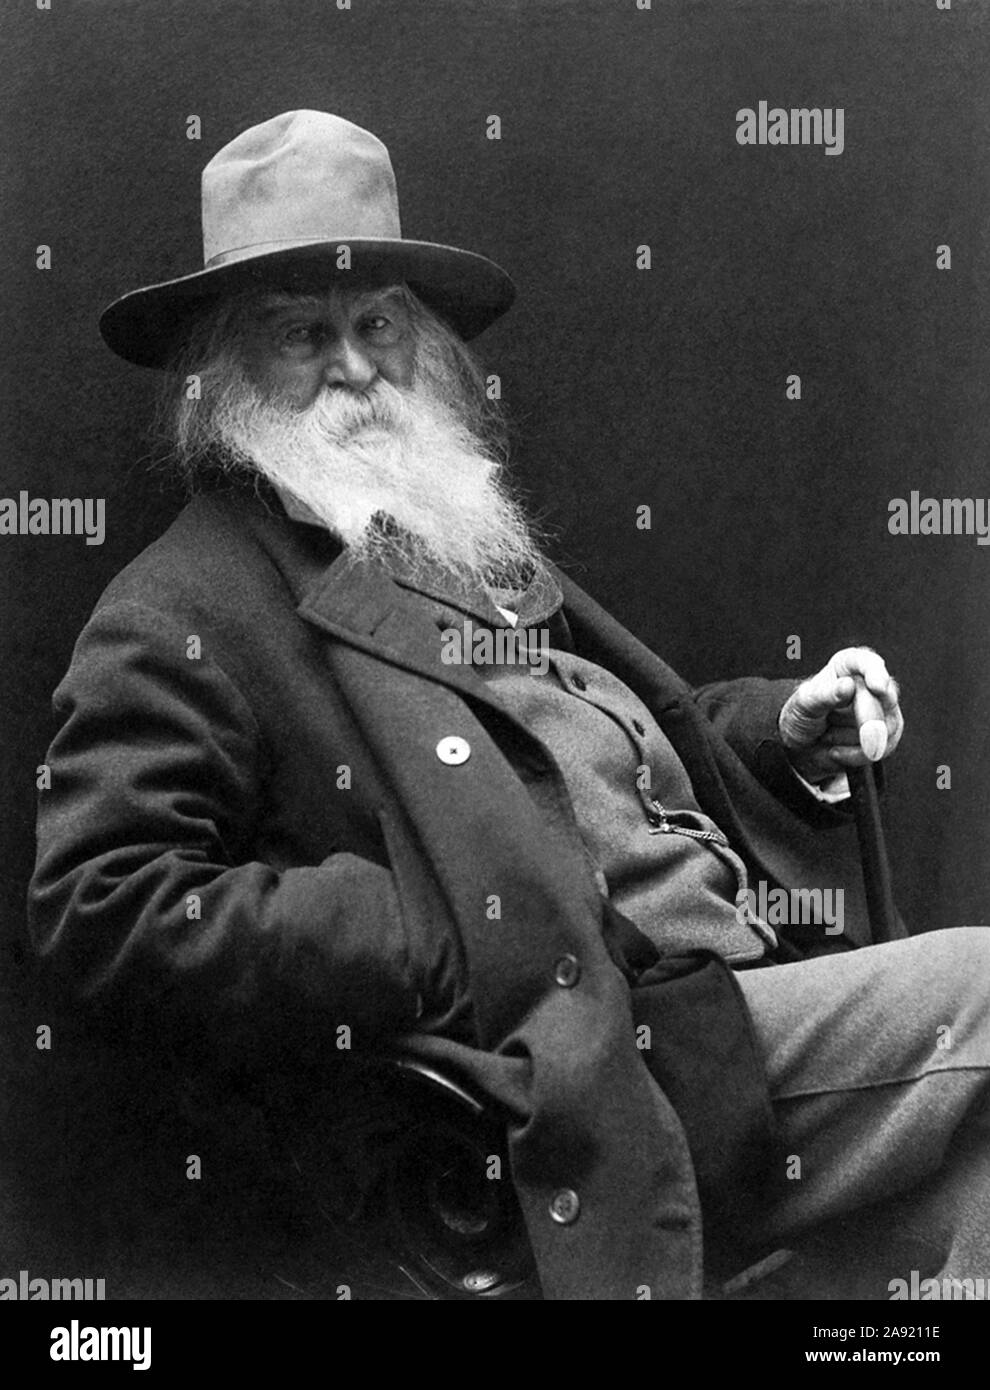 Jahrgang Porträt Foto der amerikanischen Dichter, Essayist und Journalist Walt Whitman (1819 - 1892). Foto ca. 1887 von George C Cox. Stockfoto